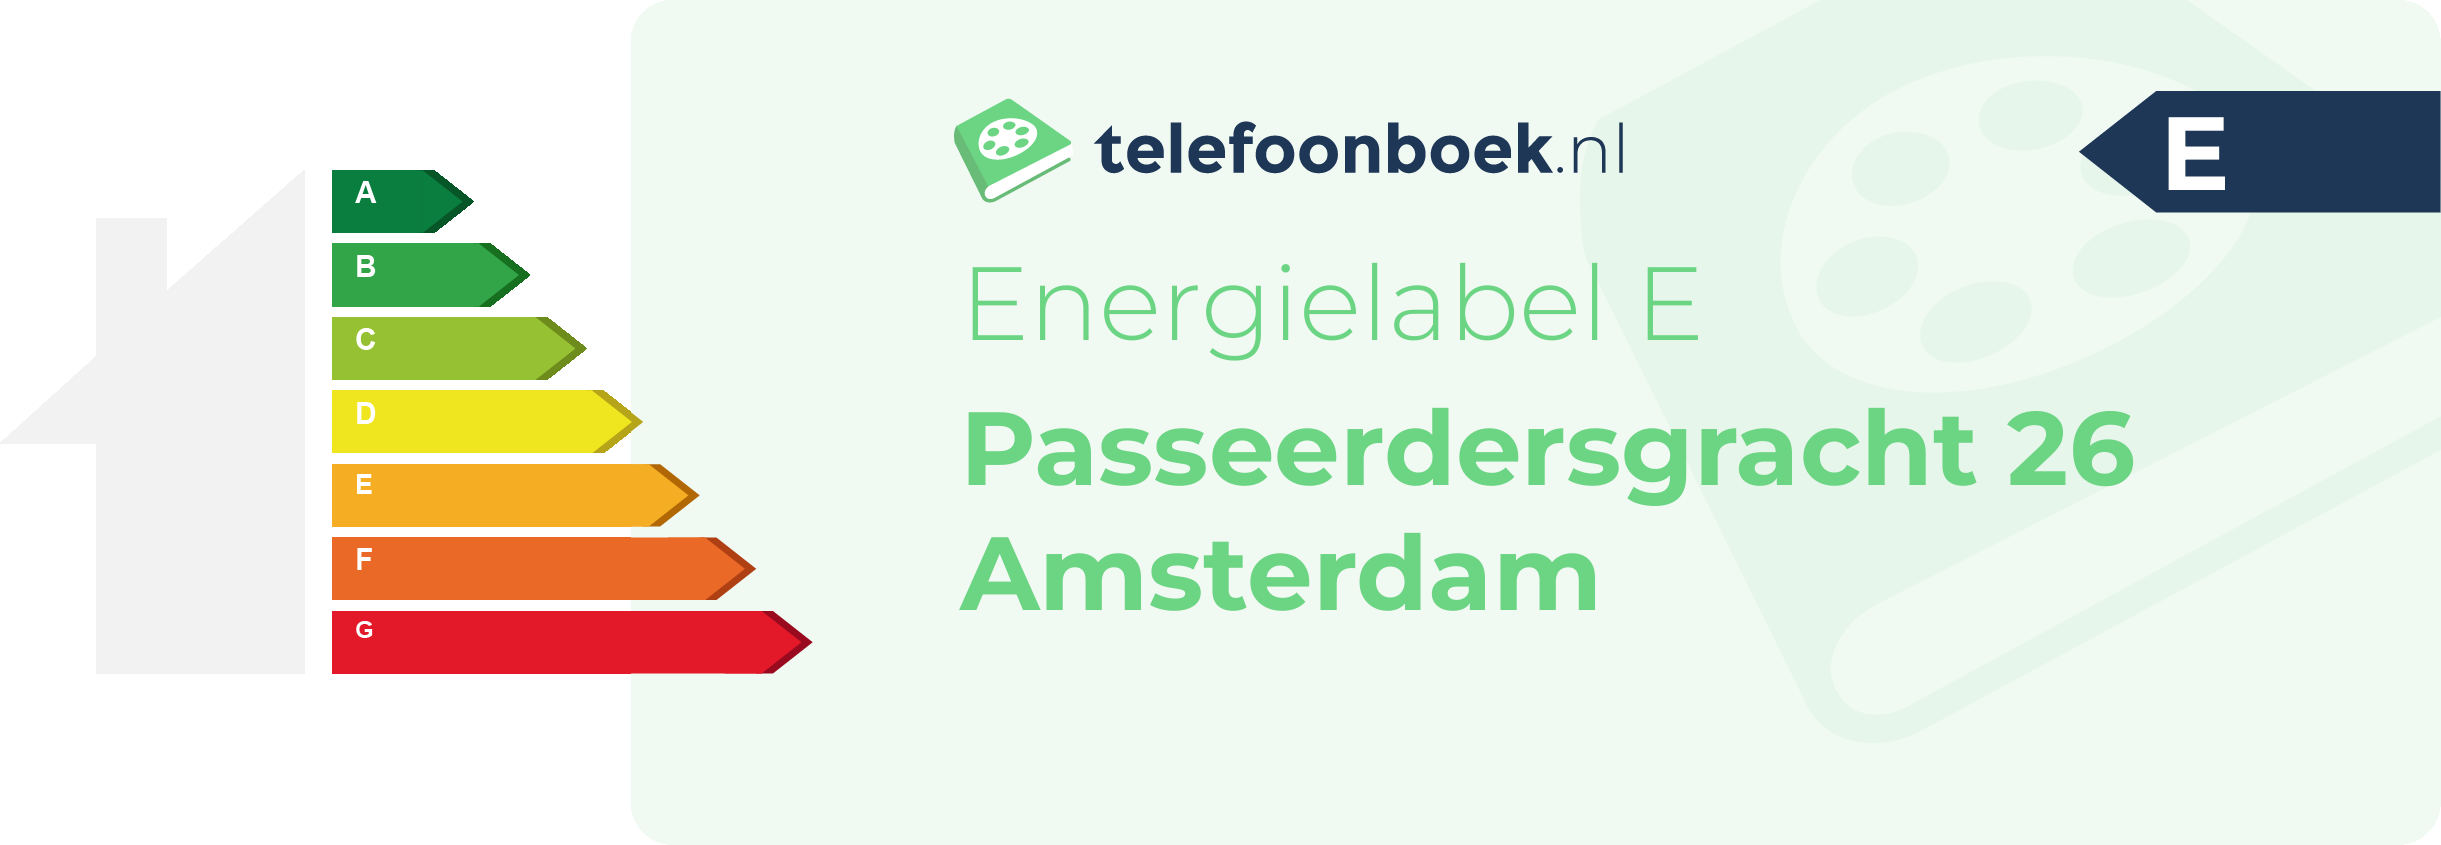 Energielabel Passeerdersgracht 26 Amsterdam